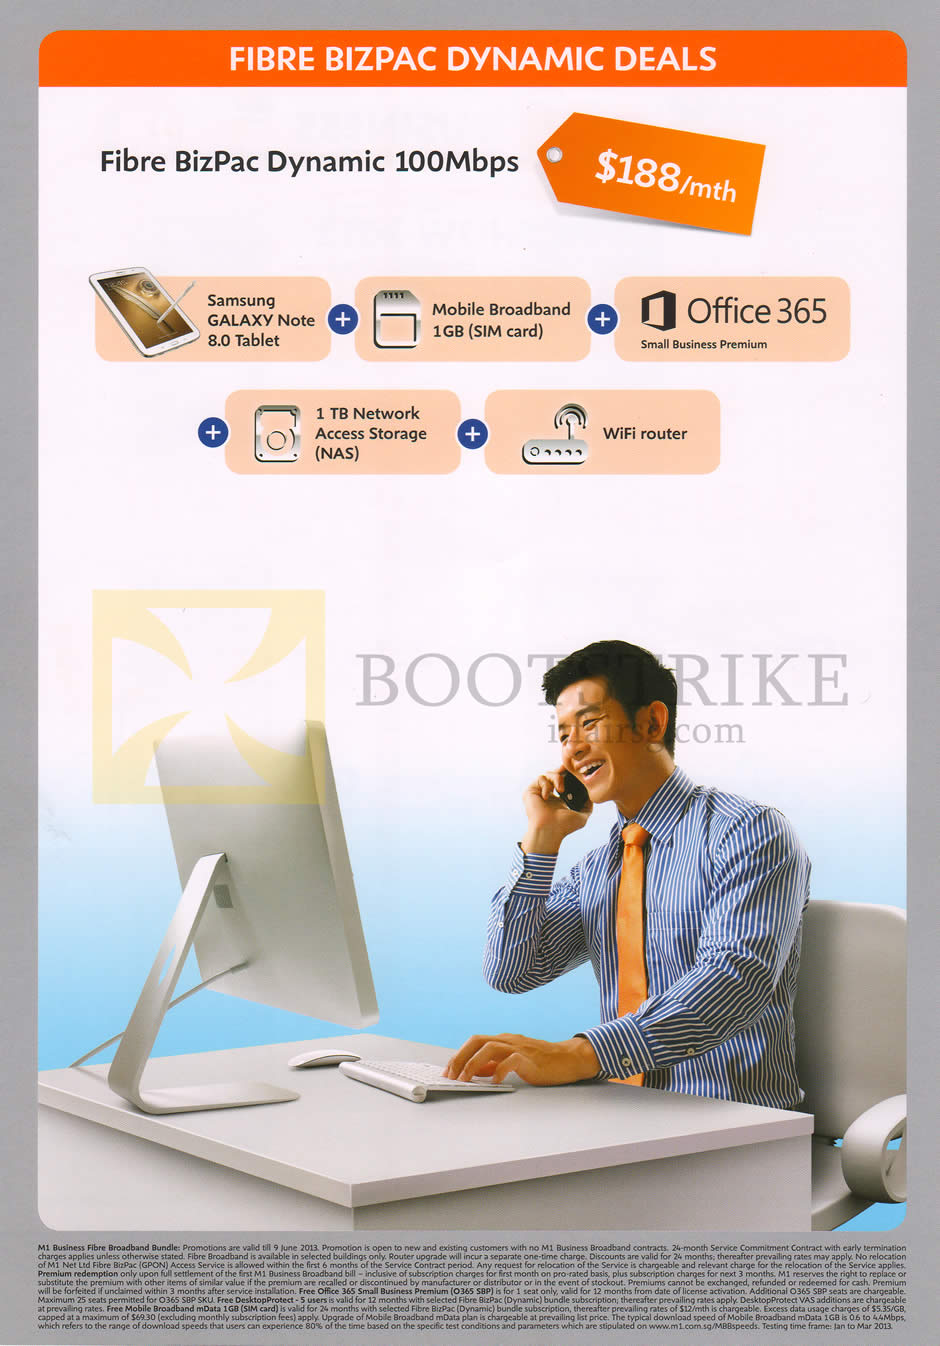 PC SHOW 2013 price list image brochure of M1 Business Fibre BizPac Dynamic 100Mbps